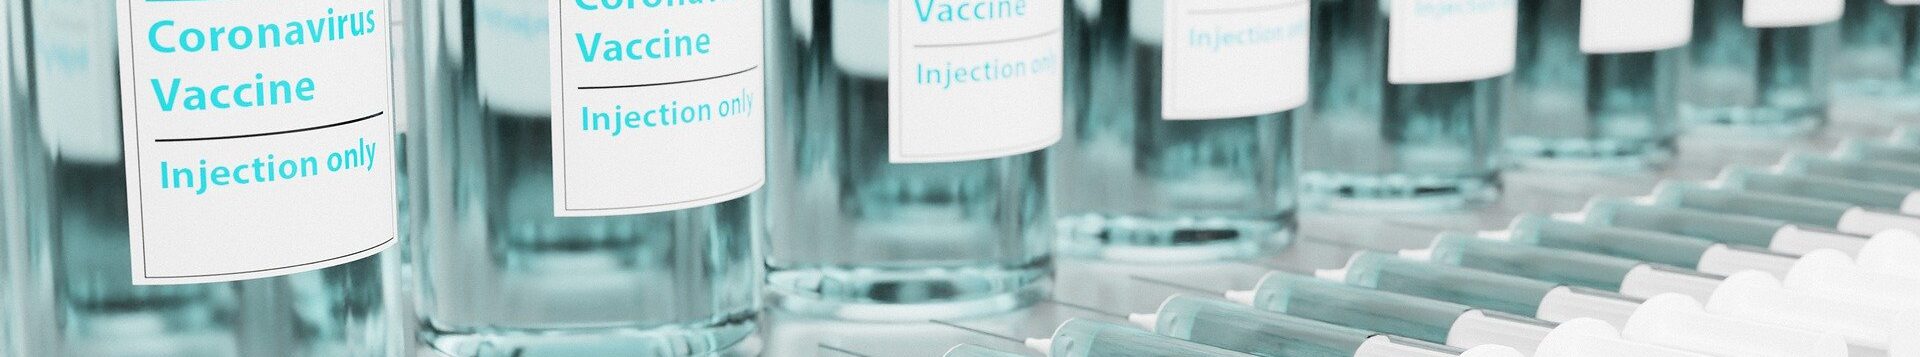 Corona Impfstoff in Flaschen und Spritzen aufgereiht